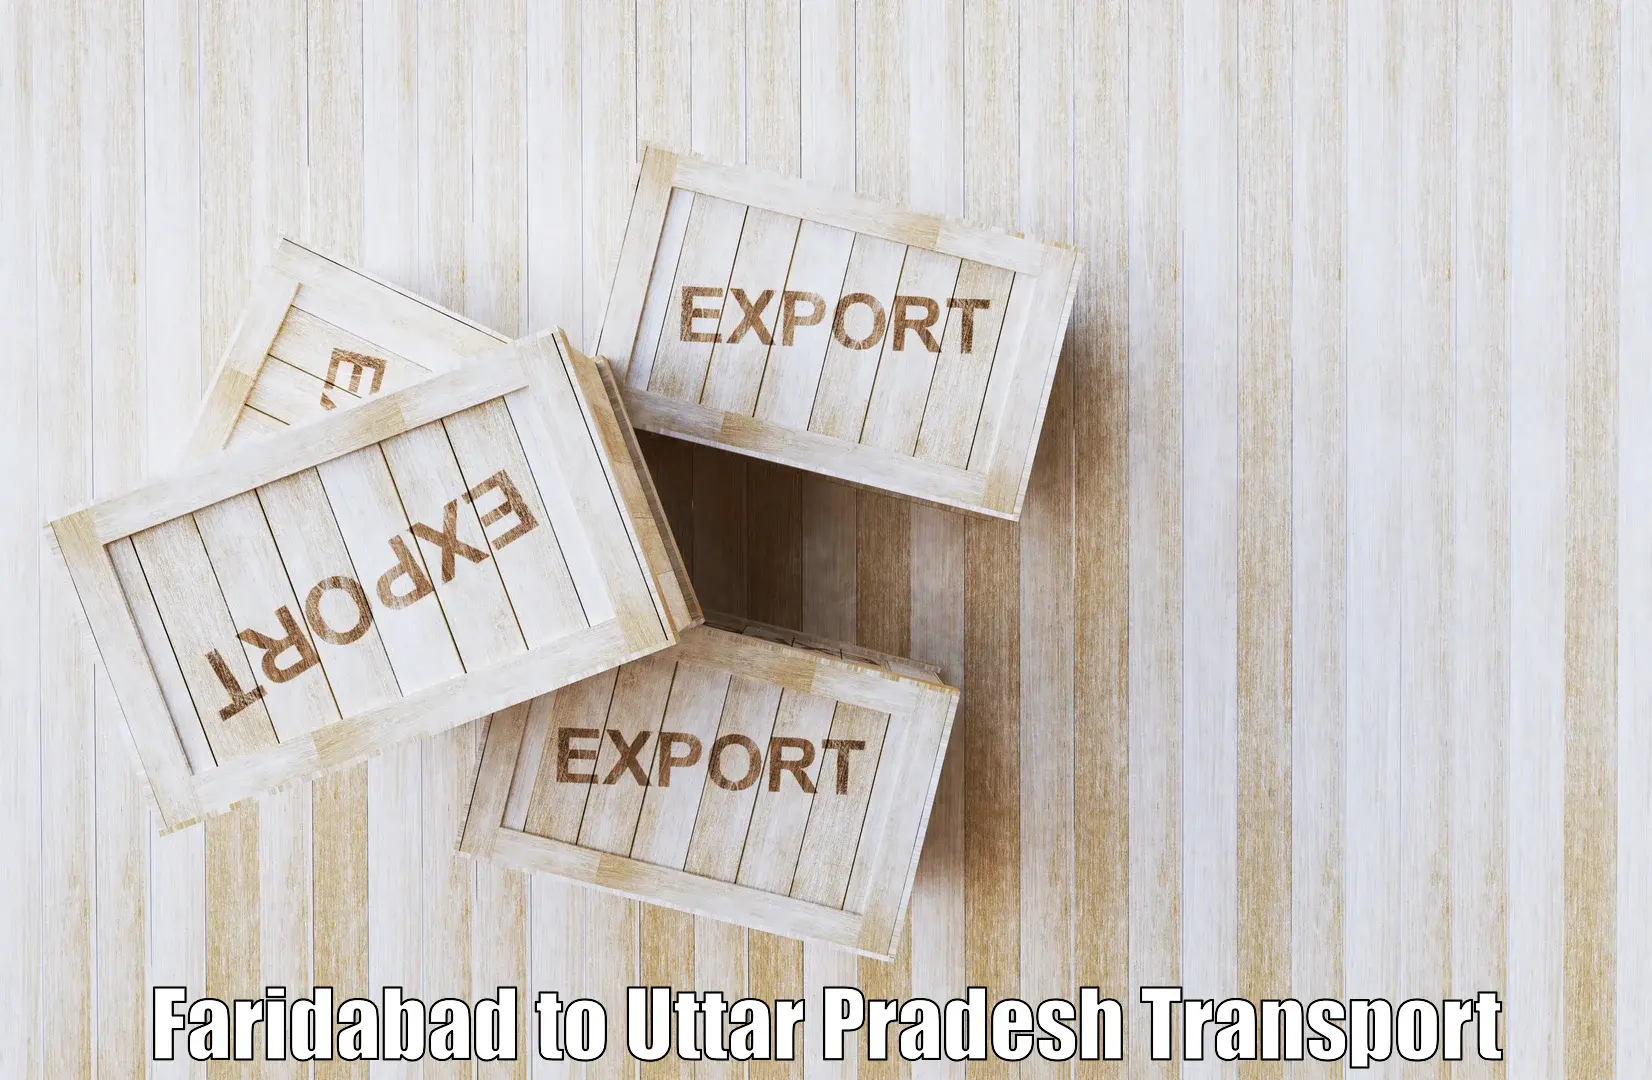 Transport in sharing Faridabad to Sant Ravidas Nagar